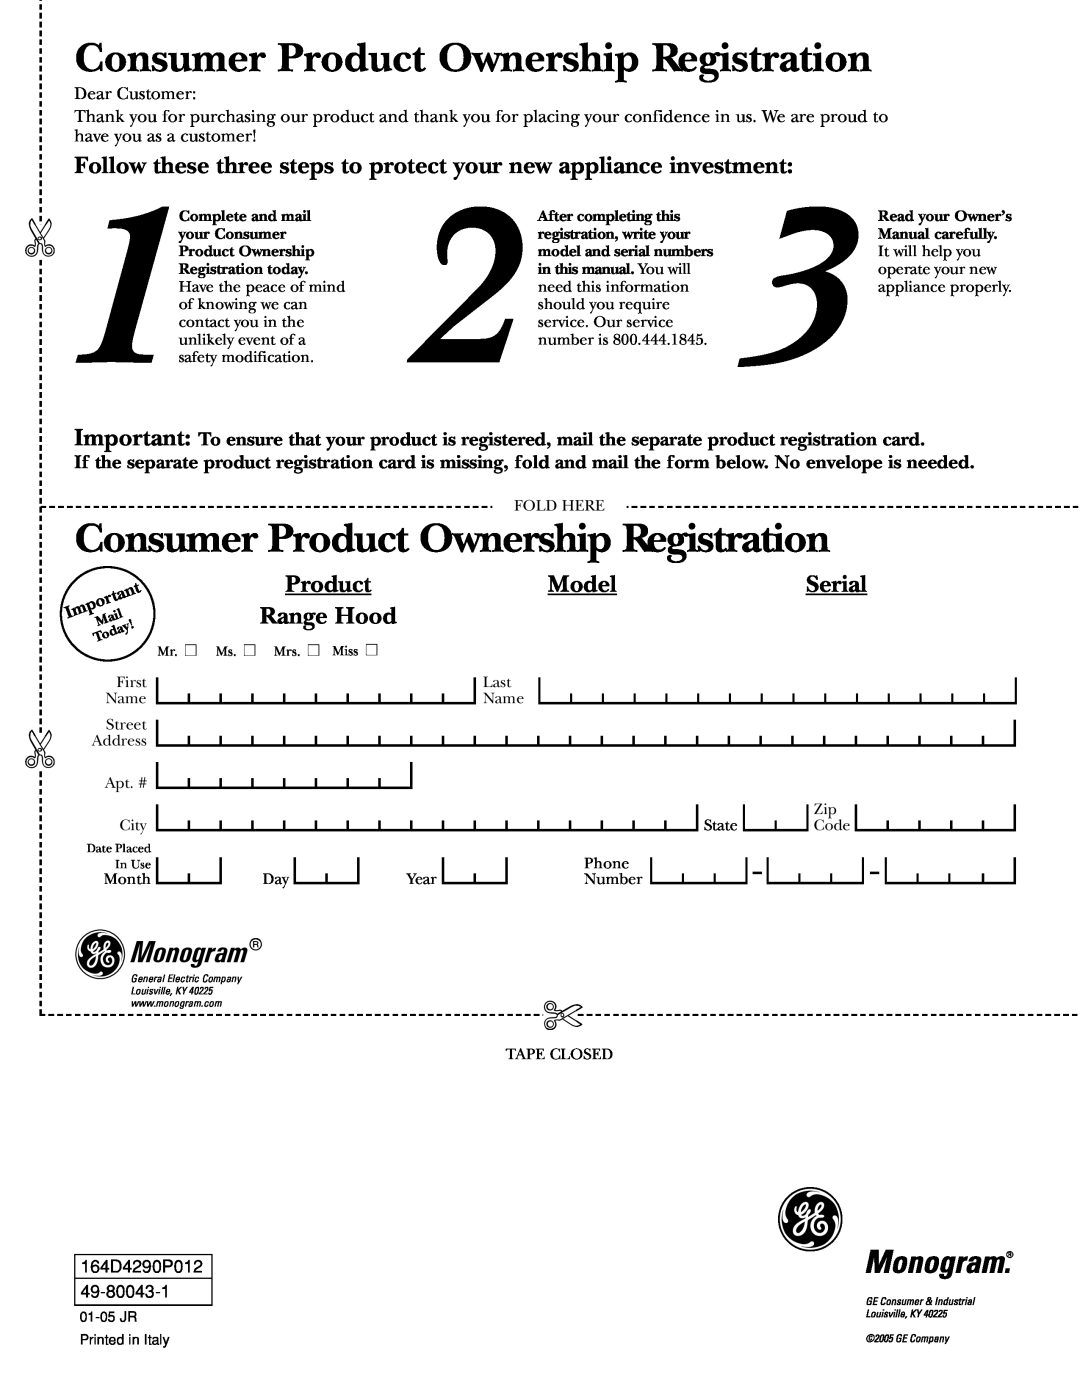 GE ZX859C, ZX8510C, ZX758C, ZX7510C, ZX858C Consumer Product Ownership Registration, Model, Range Hood, Monogram, Serial 